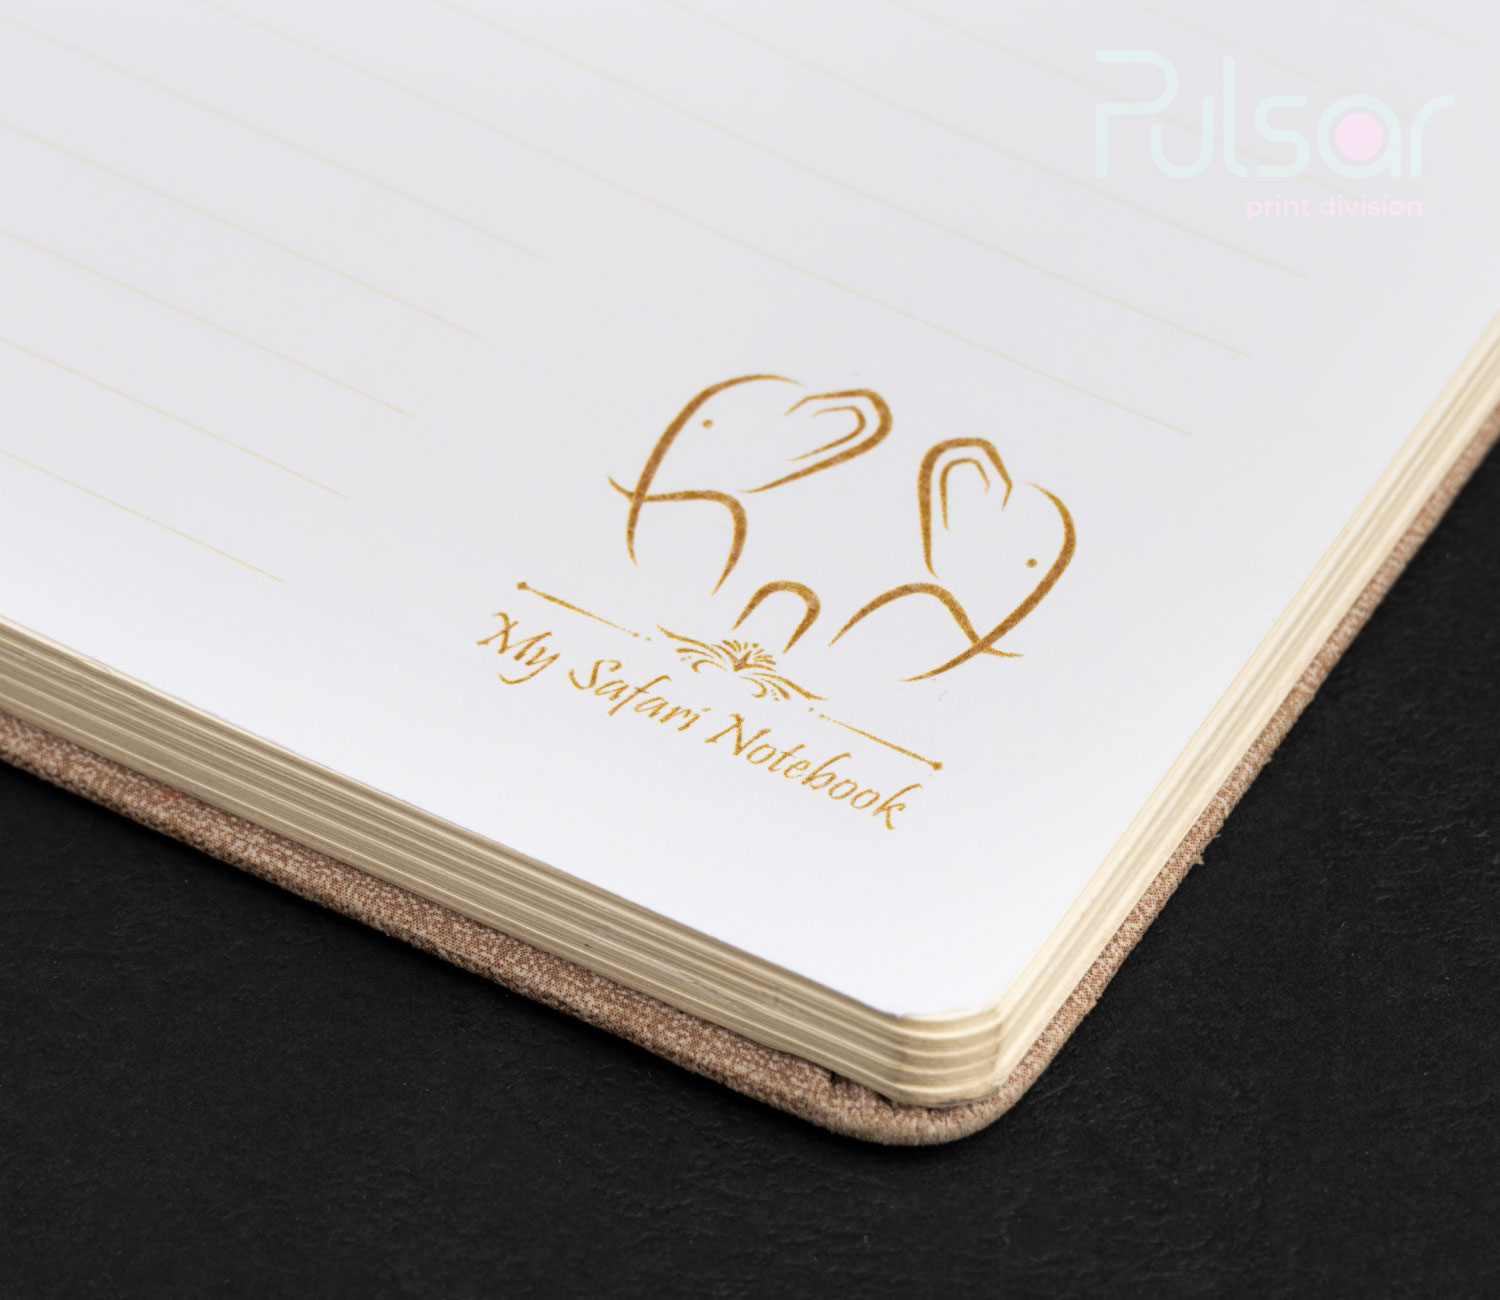 Personalised/Branded Notebook Design & Printing